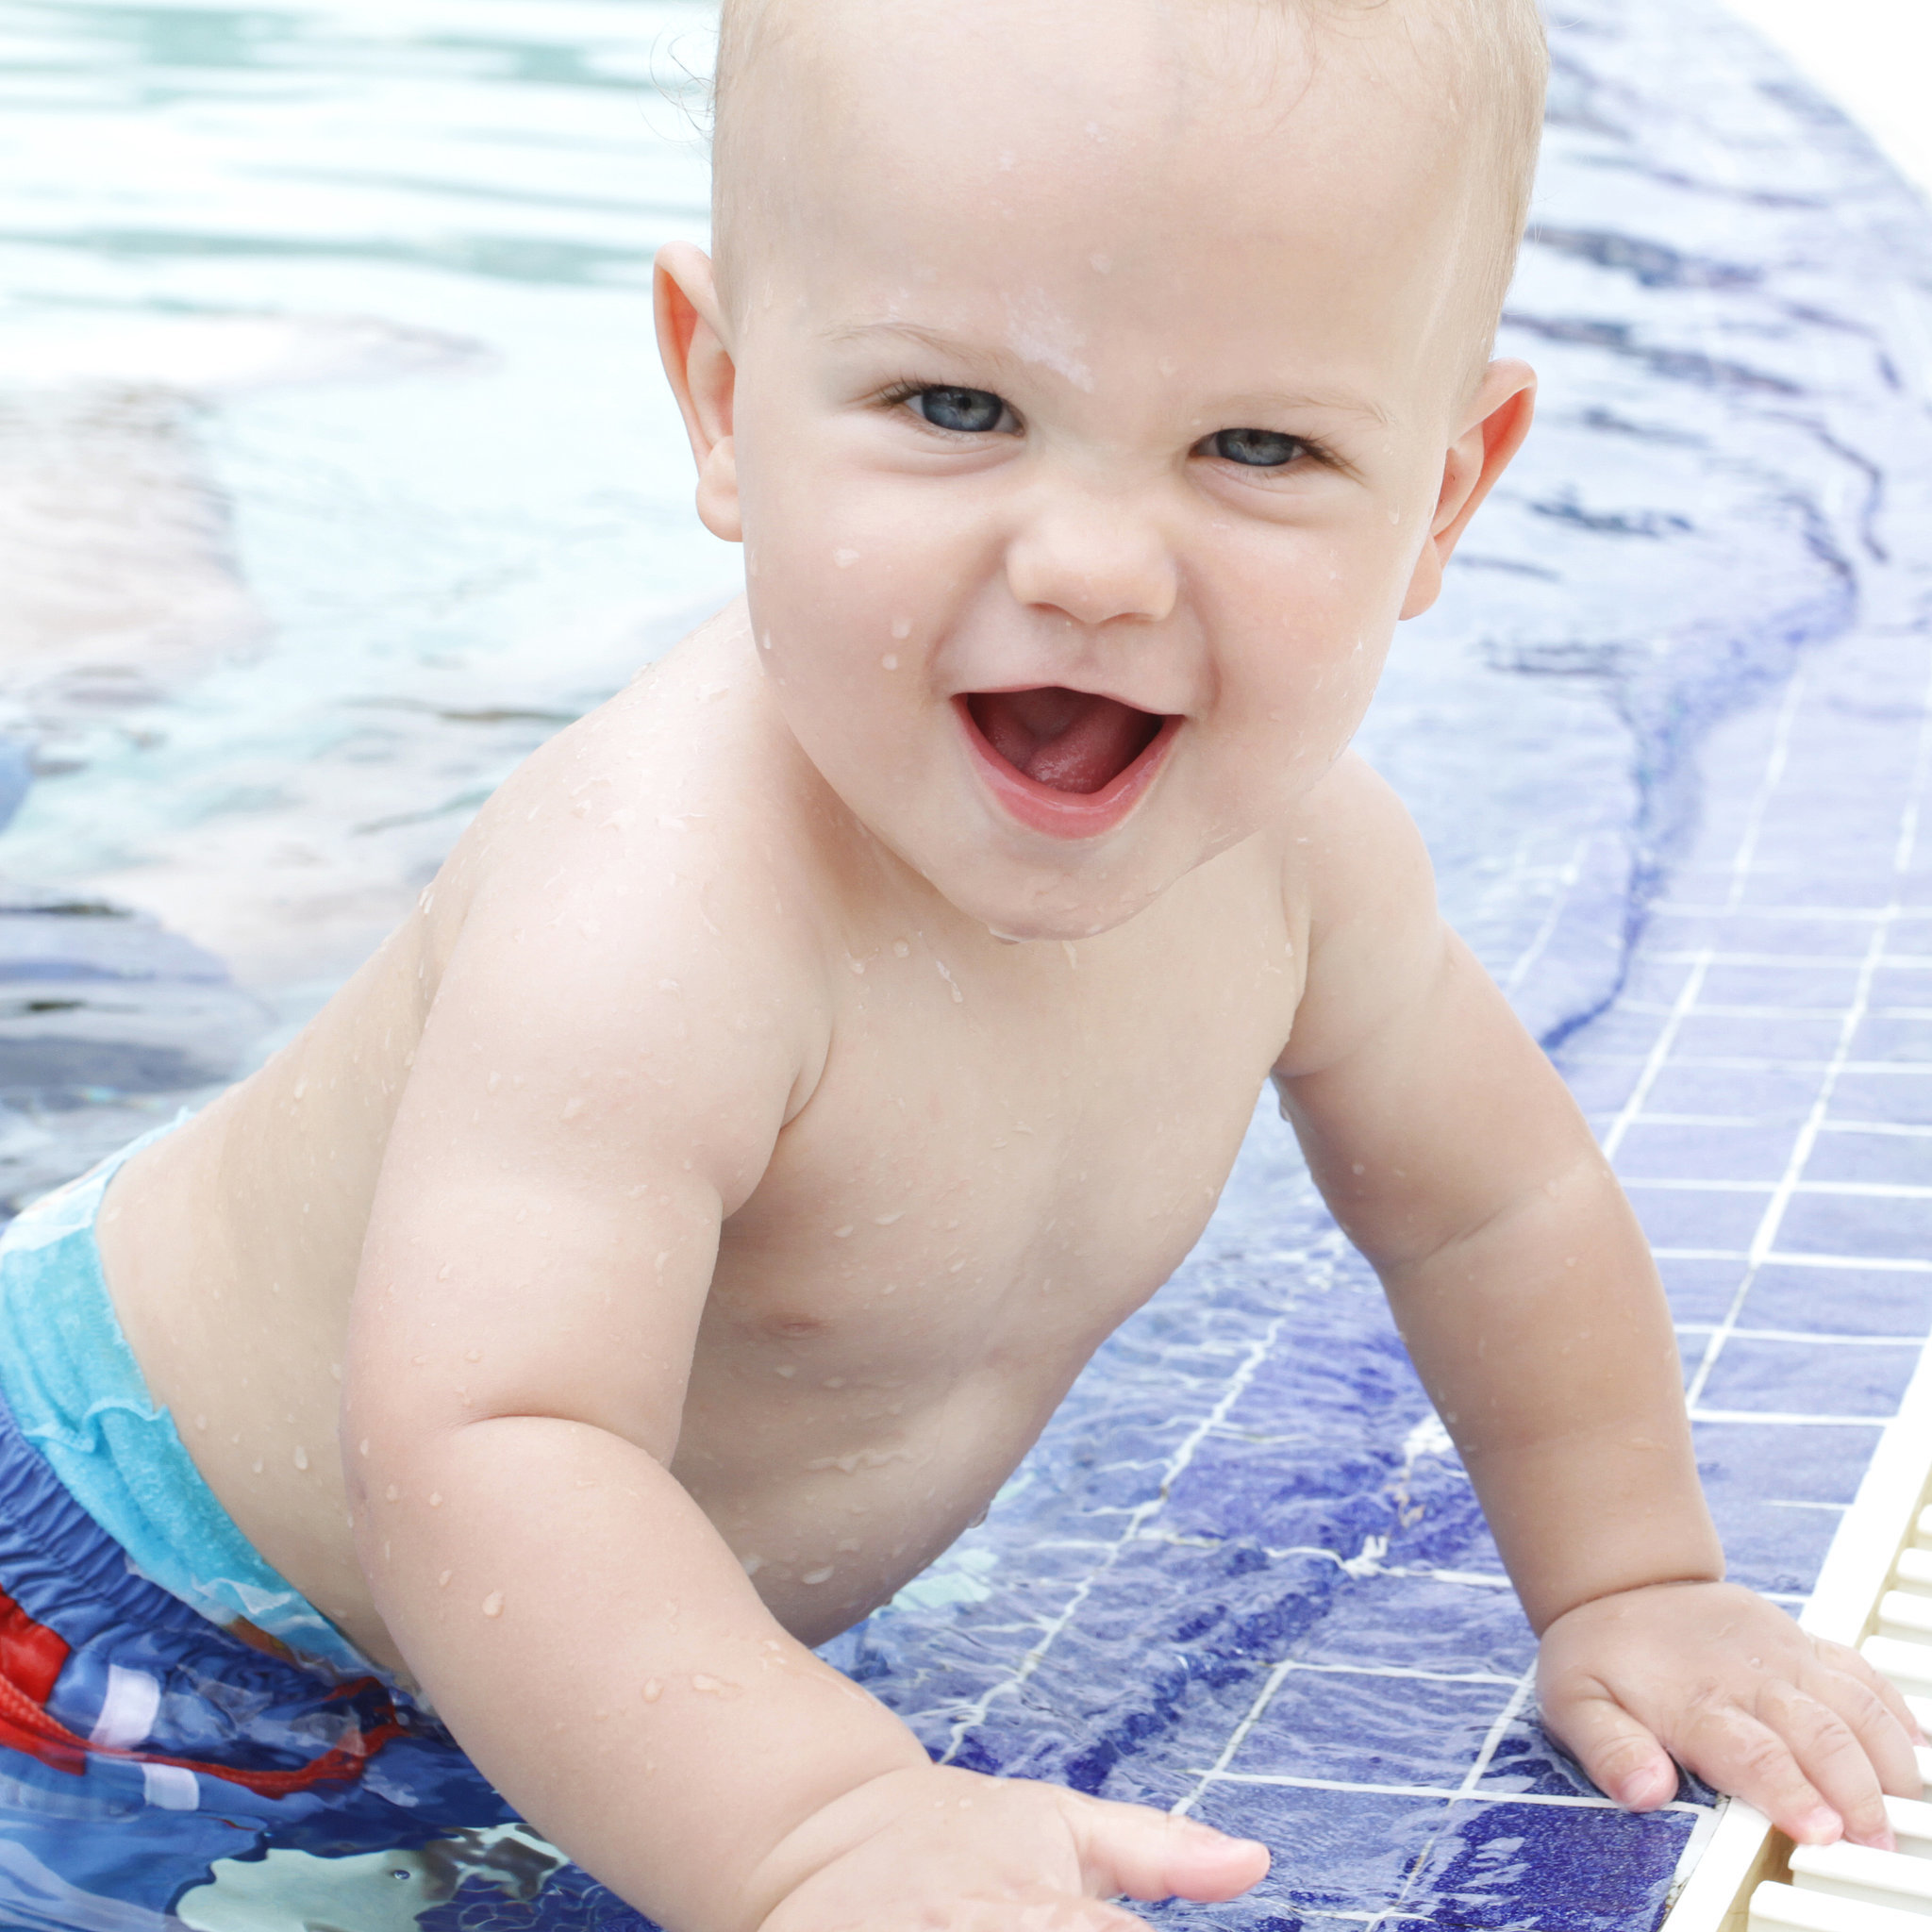 Swim Time Pet zabavnih spoljašnjih aktivnosti za vašu bebu